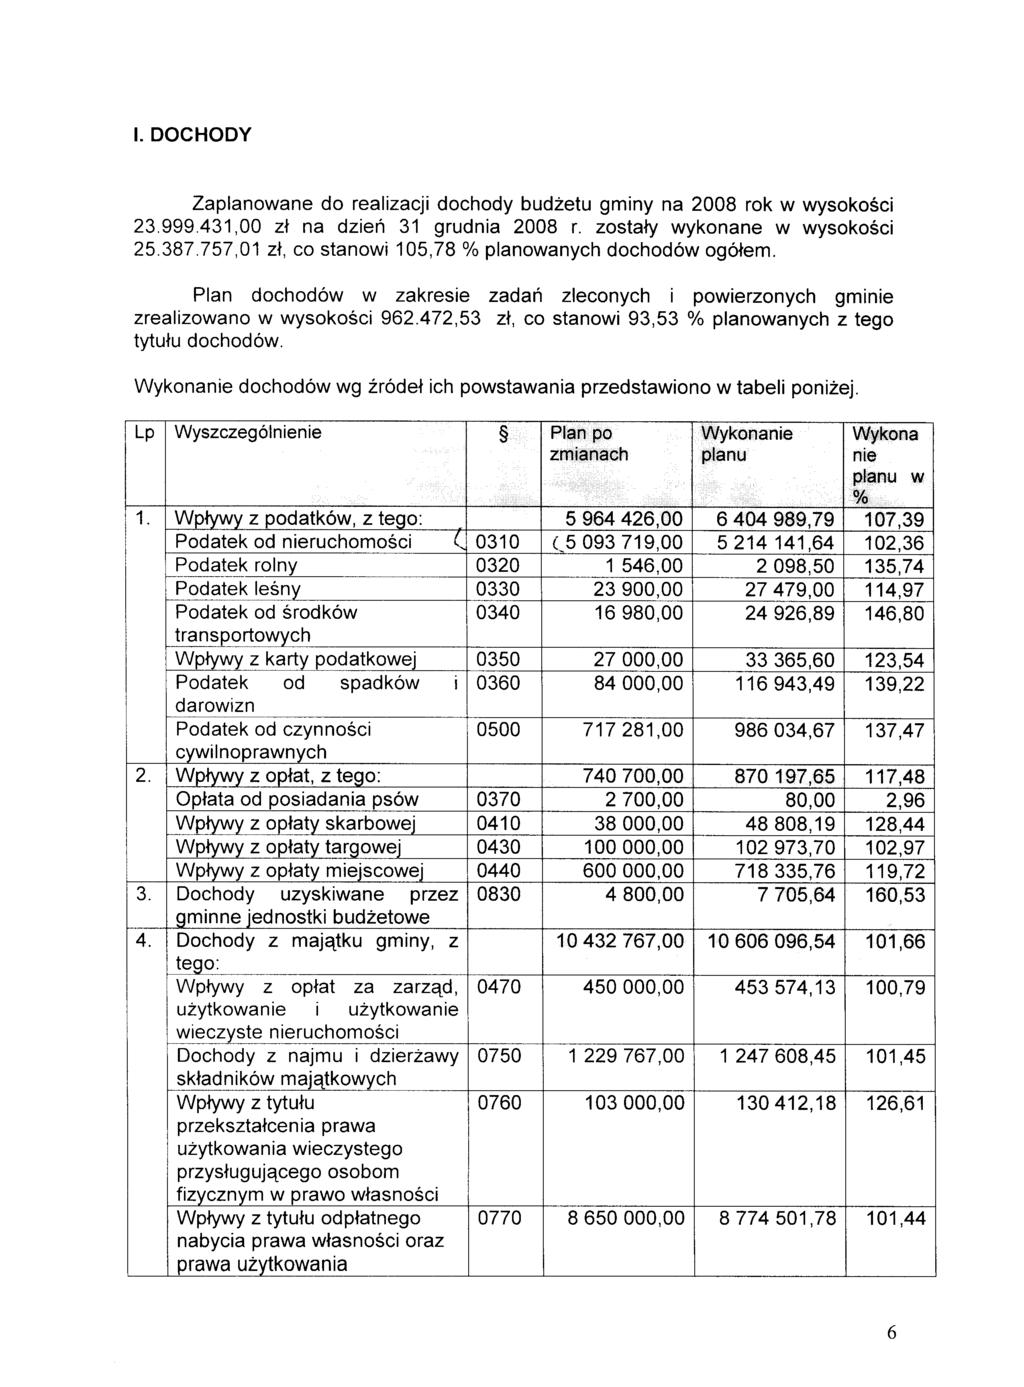 Zaplanowane do realizacji dochody budzetu gminy na 2008 rok w wysokosci 23.999.431,00 zt na dzien 31 grudnia 2008 r. zostaty wykonane w wysokosci 25.387.